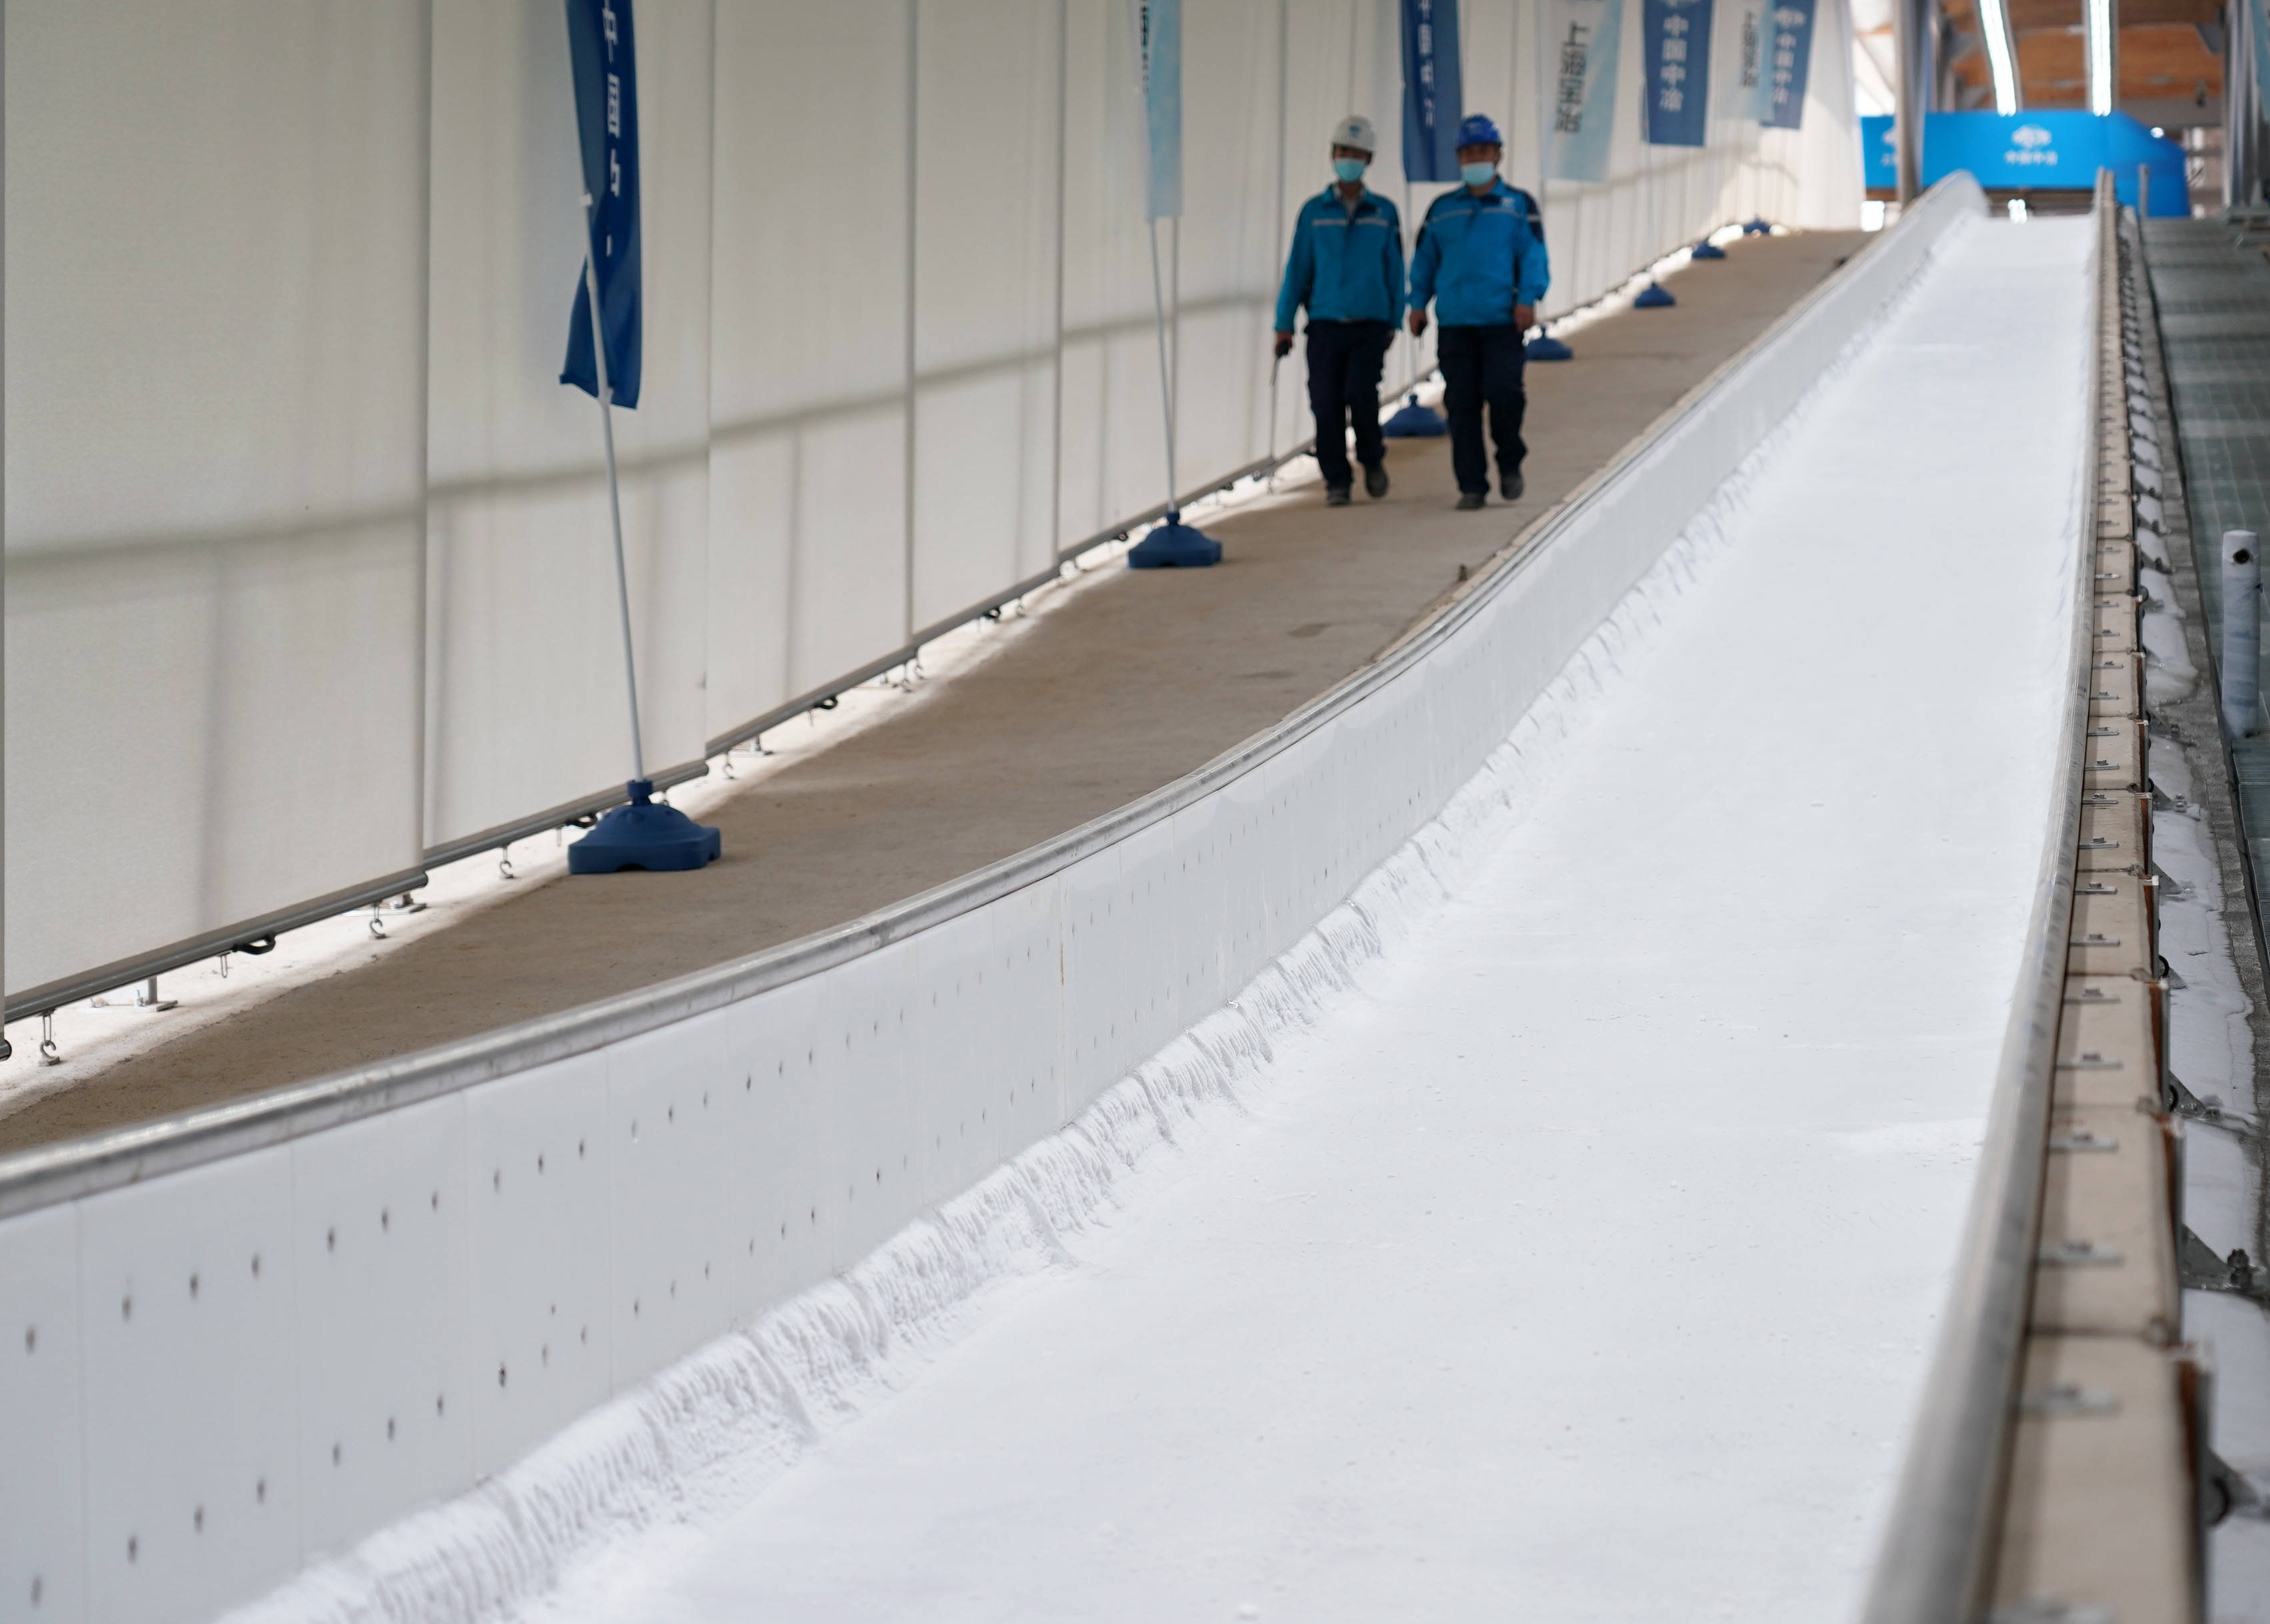 这是9月27日拍摄的正在制冰的国家雪车雪橇中心赛道